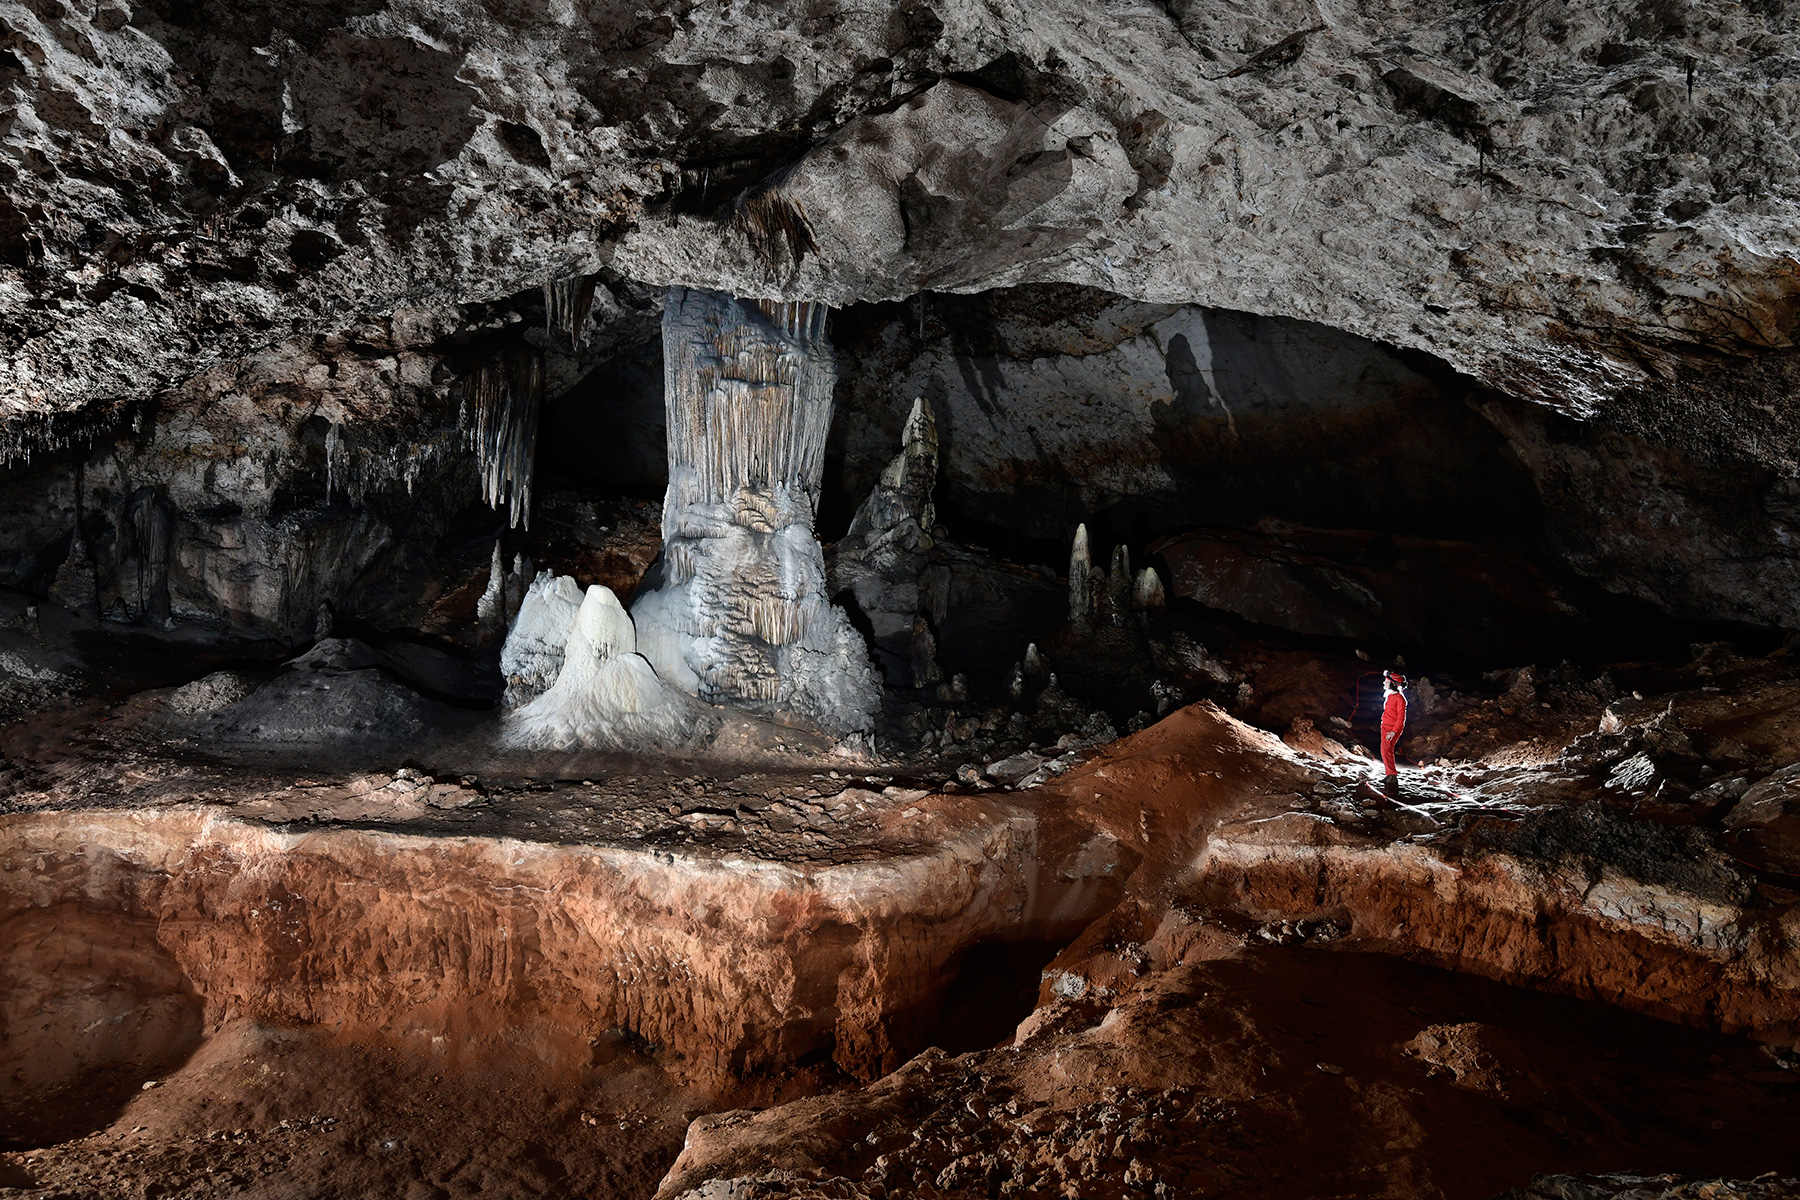 Slaughter Canyon Cave (USA - Nouveau Mexique) - Grande salle avec colonnes massives reposant sur un sol composé de dépôts de guano